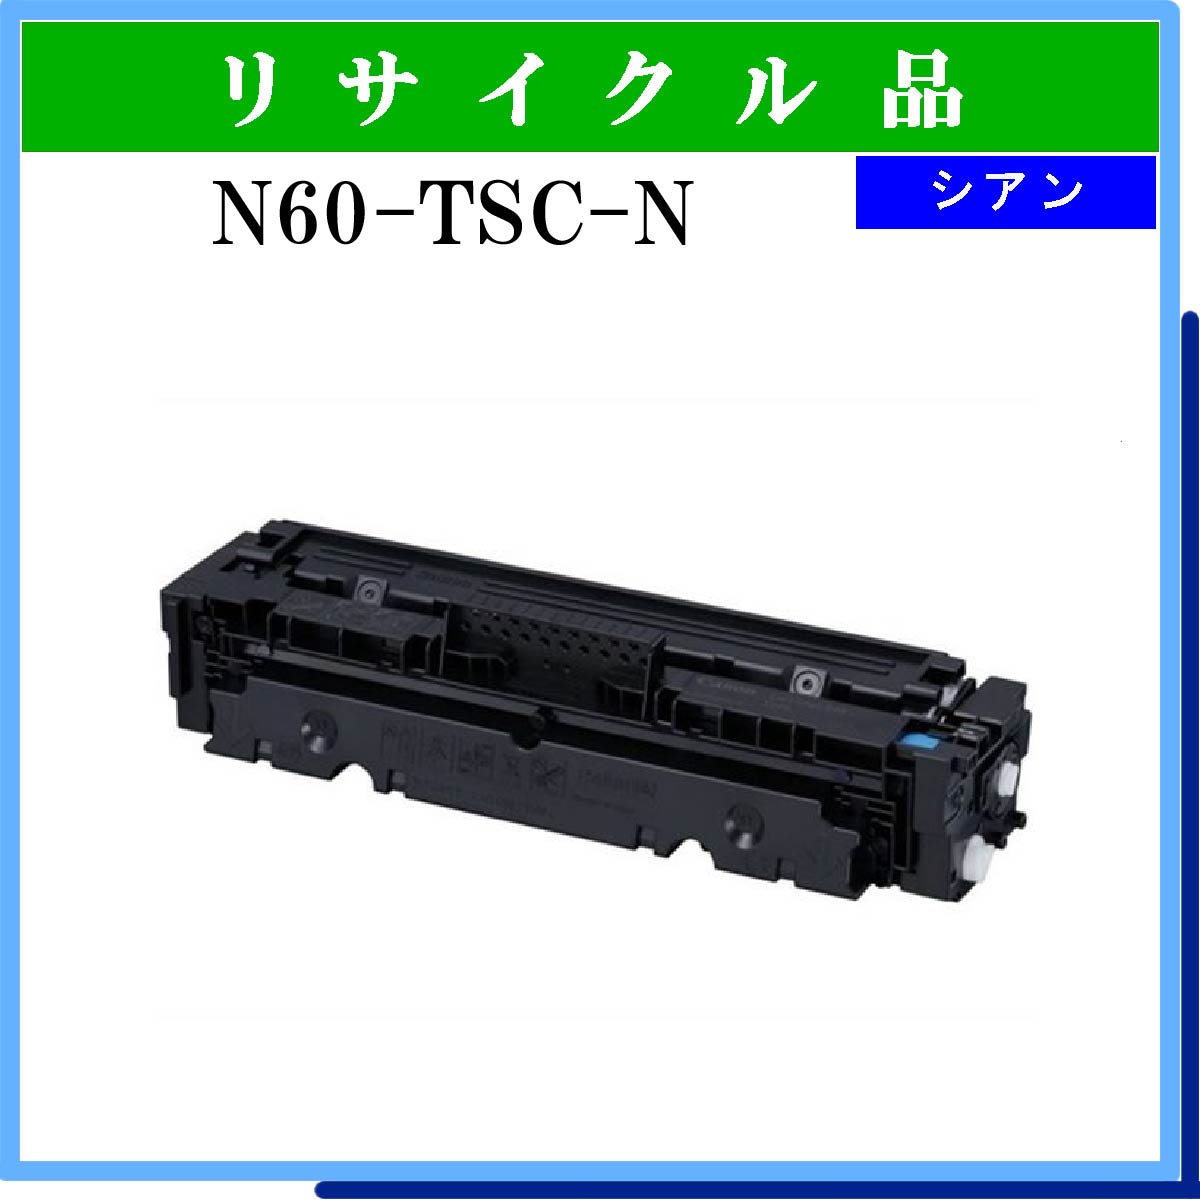 N60-TSC-N